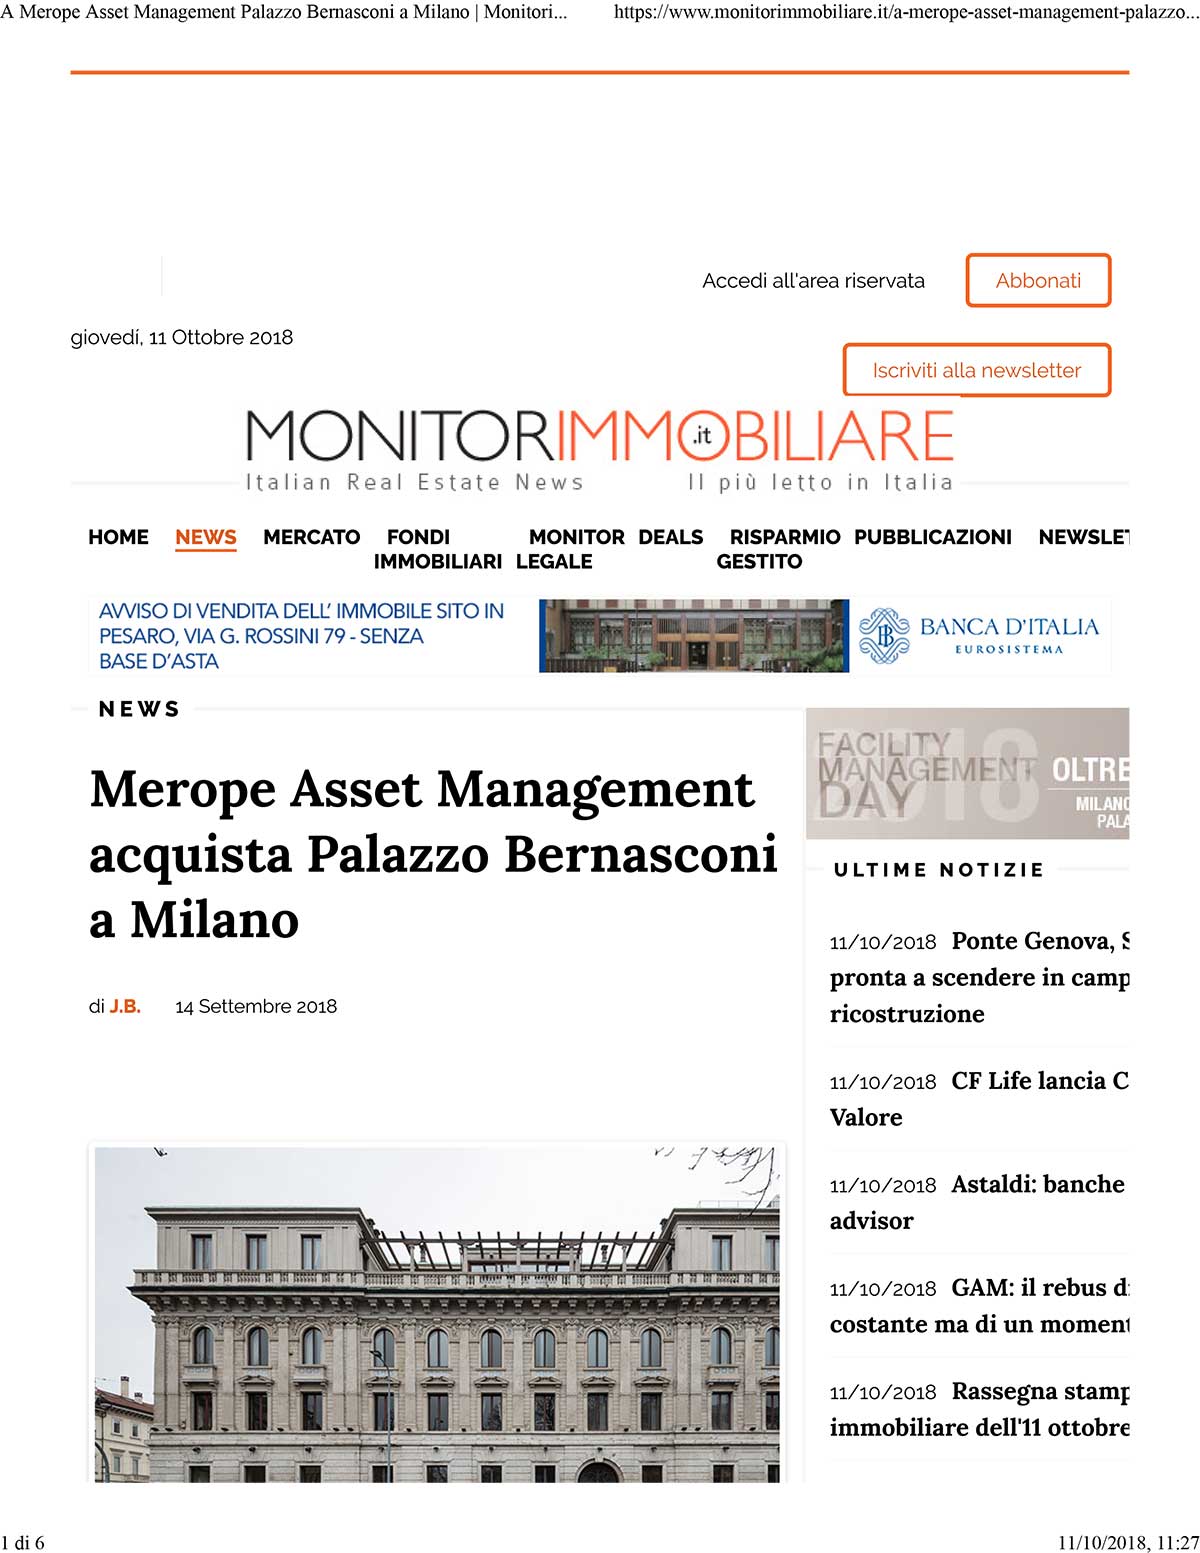 Merope-Palazzo-Bernasconi